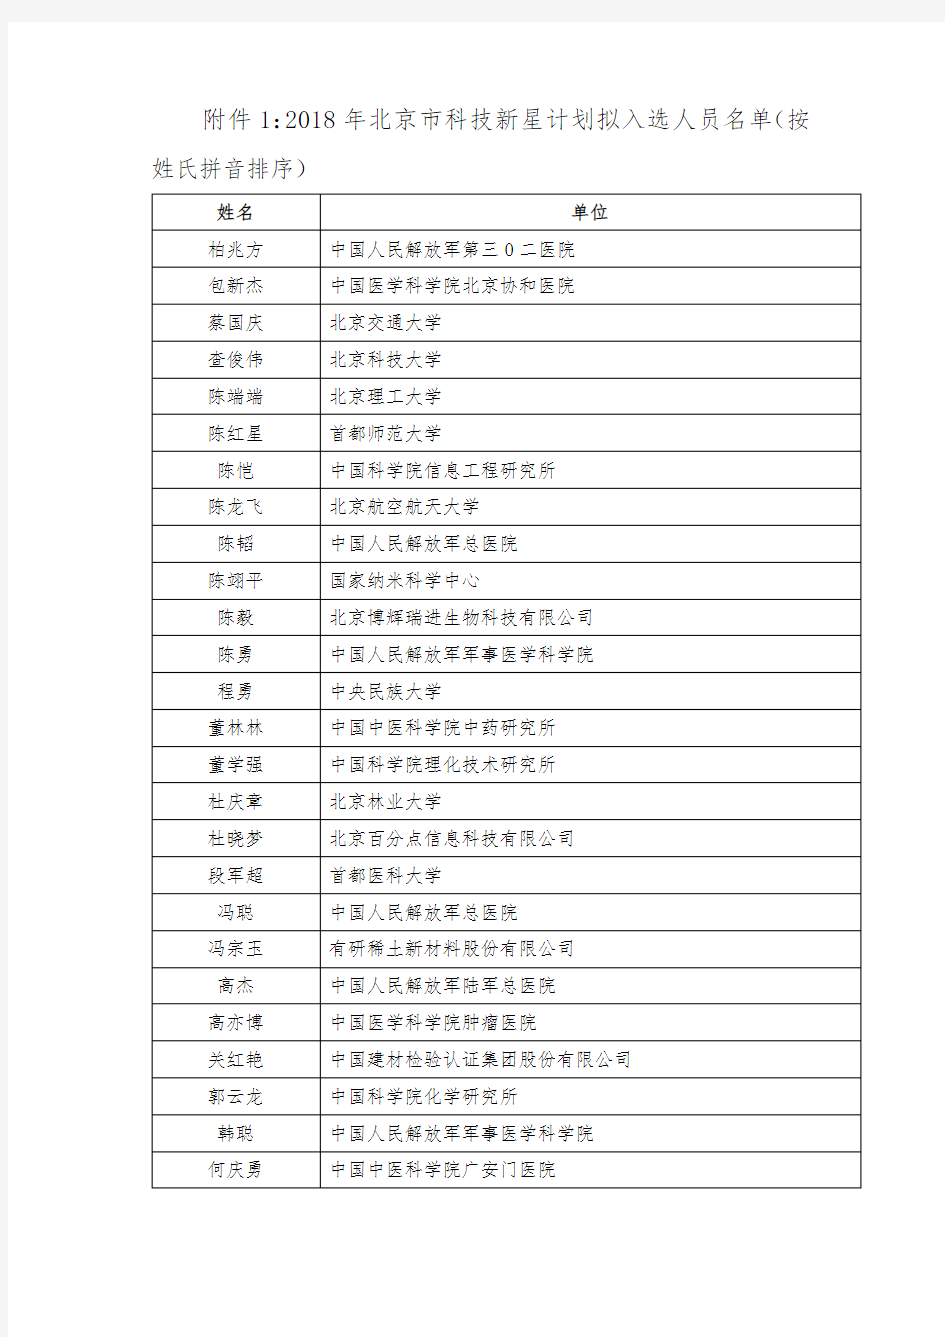 2018年北京市科技新星计划拟入选人员名单